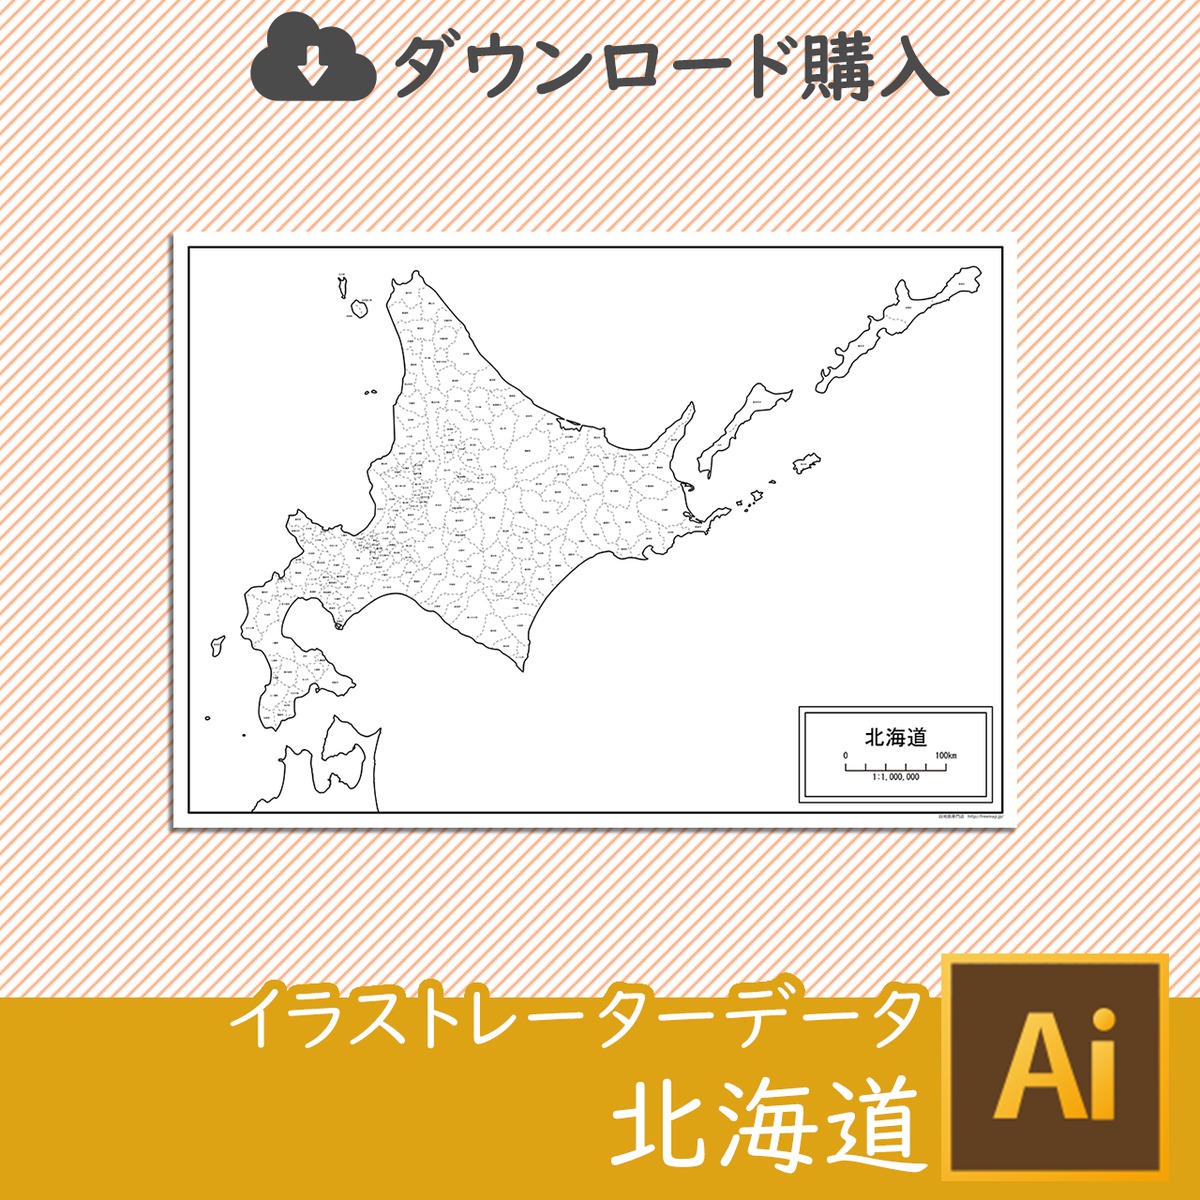 北海道 北方領土あり の白地図データ 白地図専門店